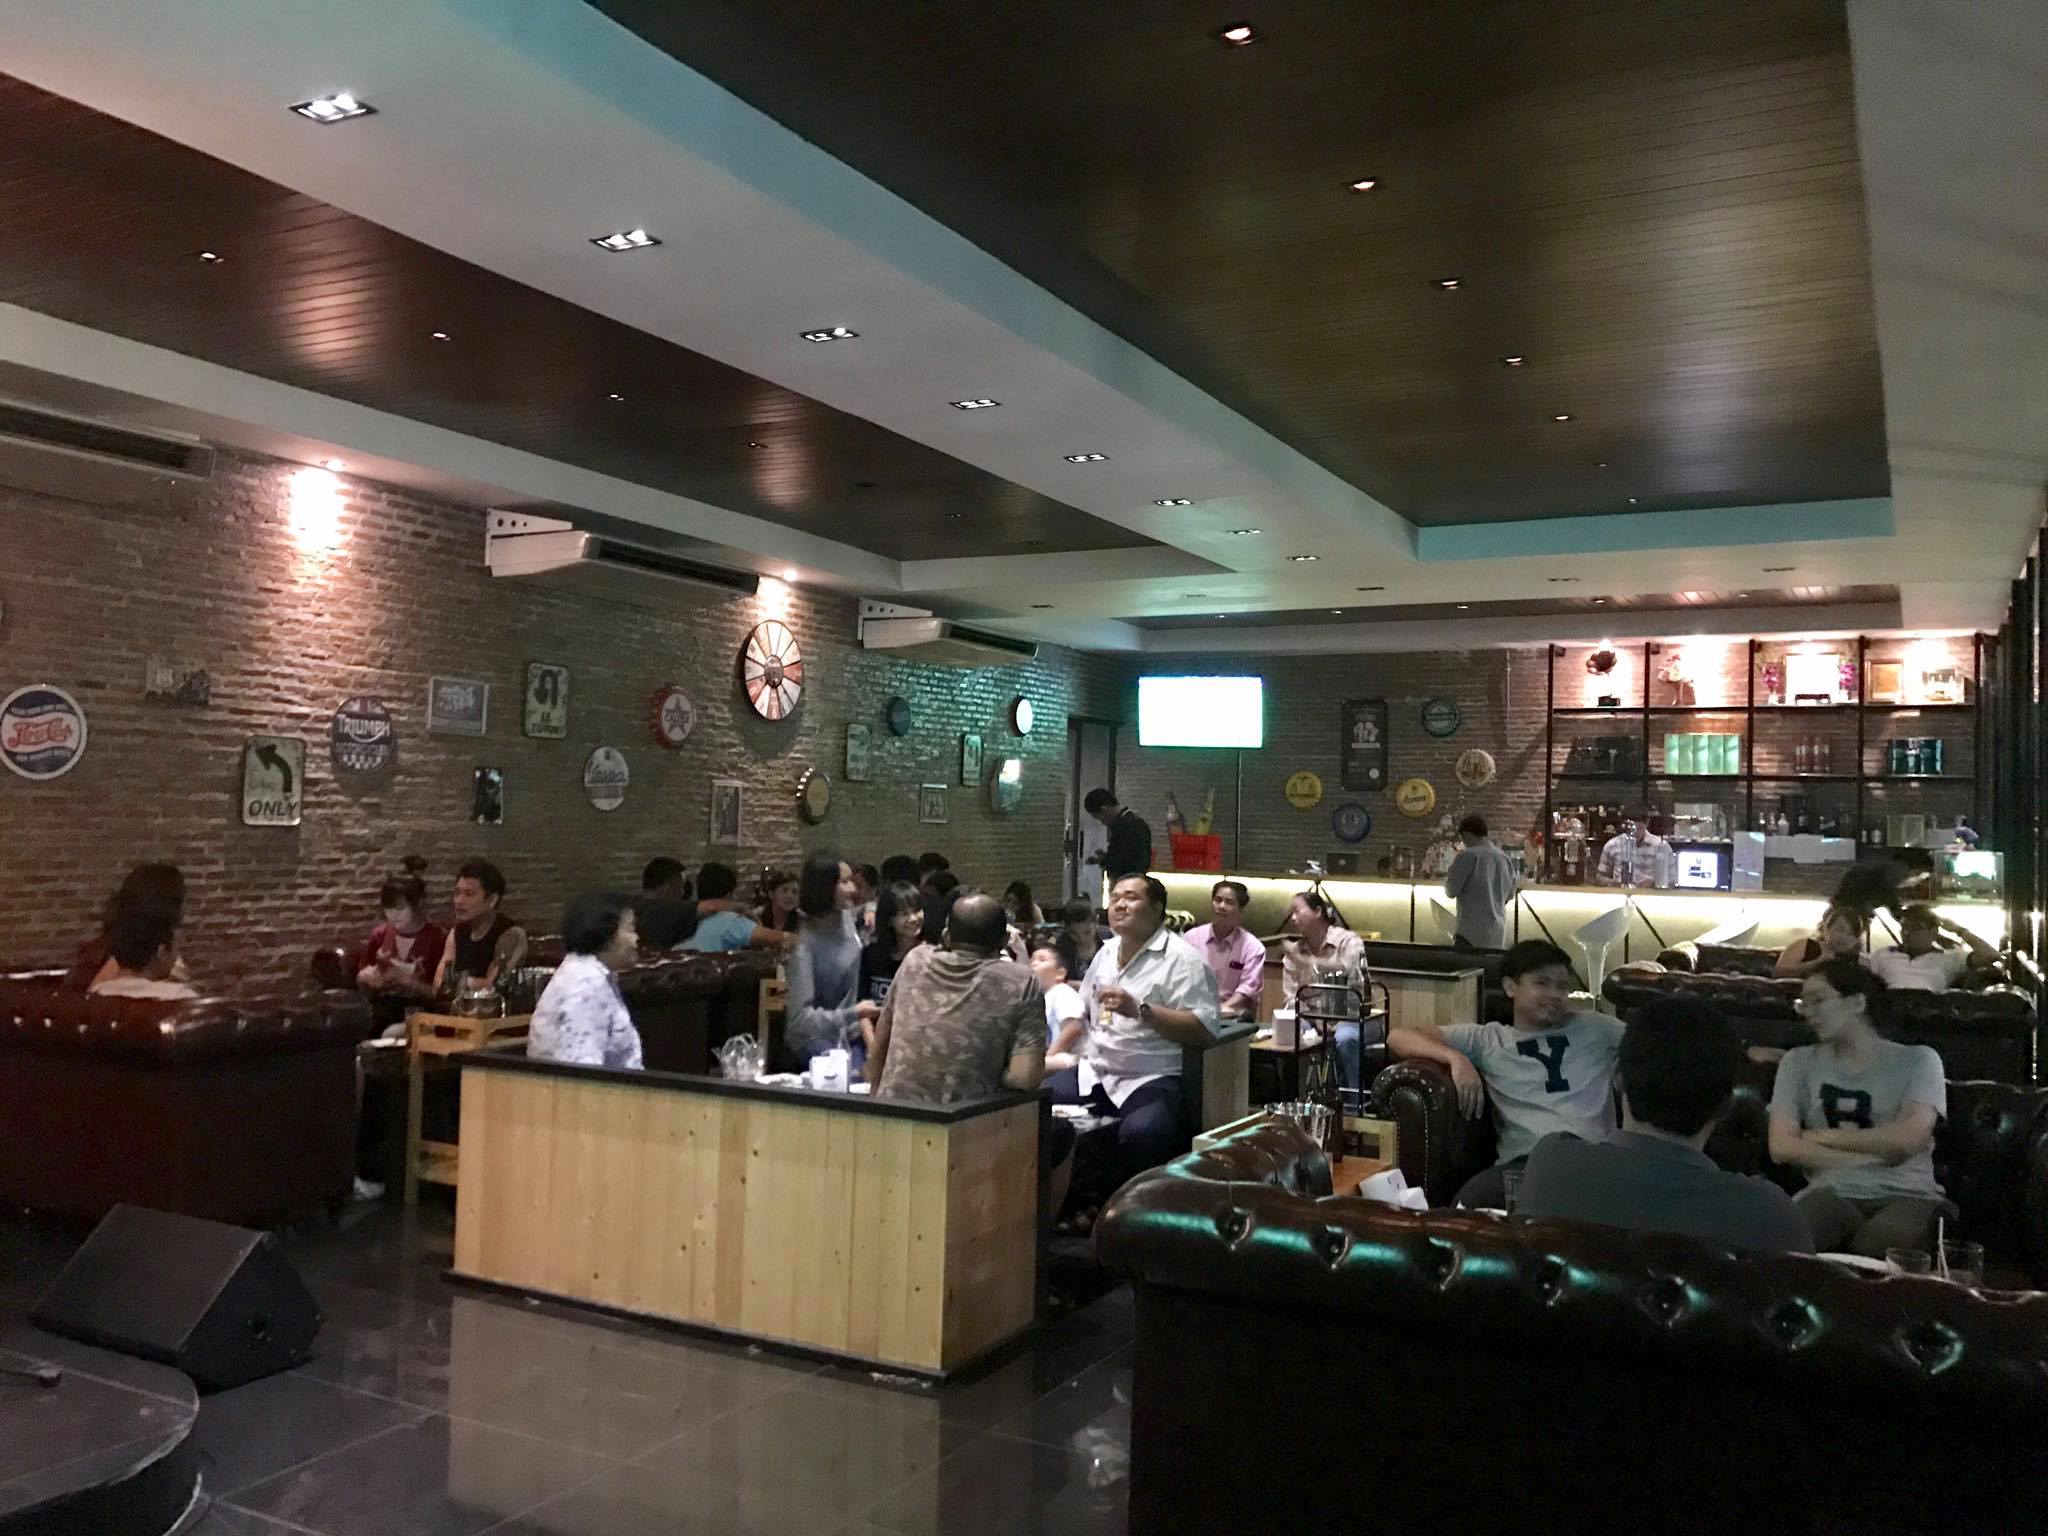 ยูเทิร์น บาร์ แอนด์ เรสเตอรองท์ (U-turn Bar&Restaurant) : นครนายก (Nakhon Nayok)